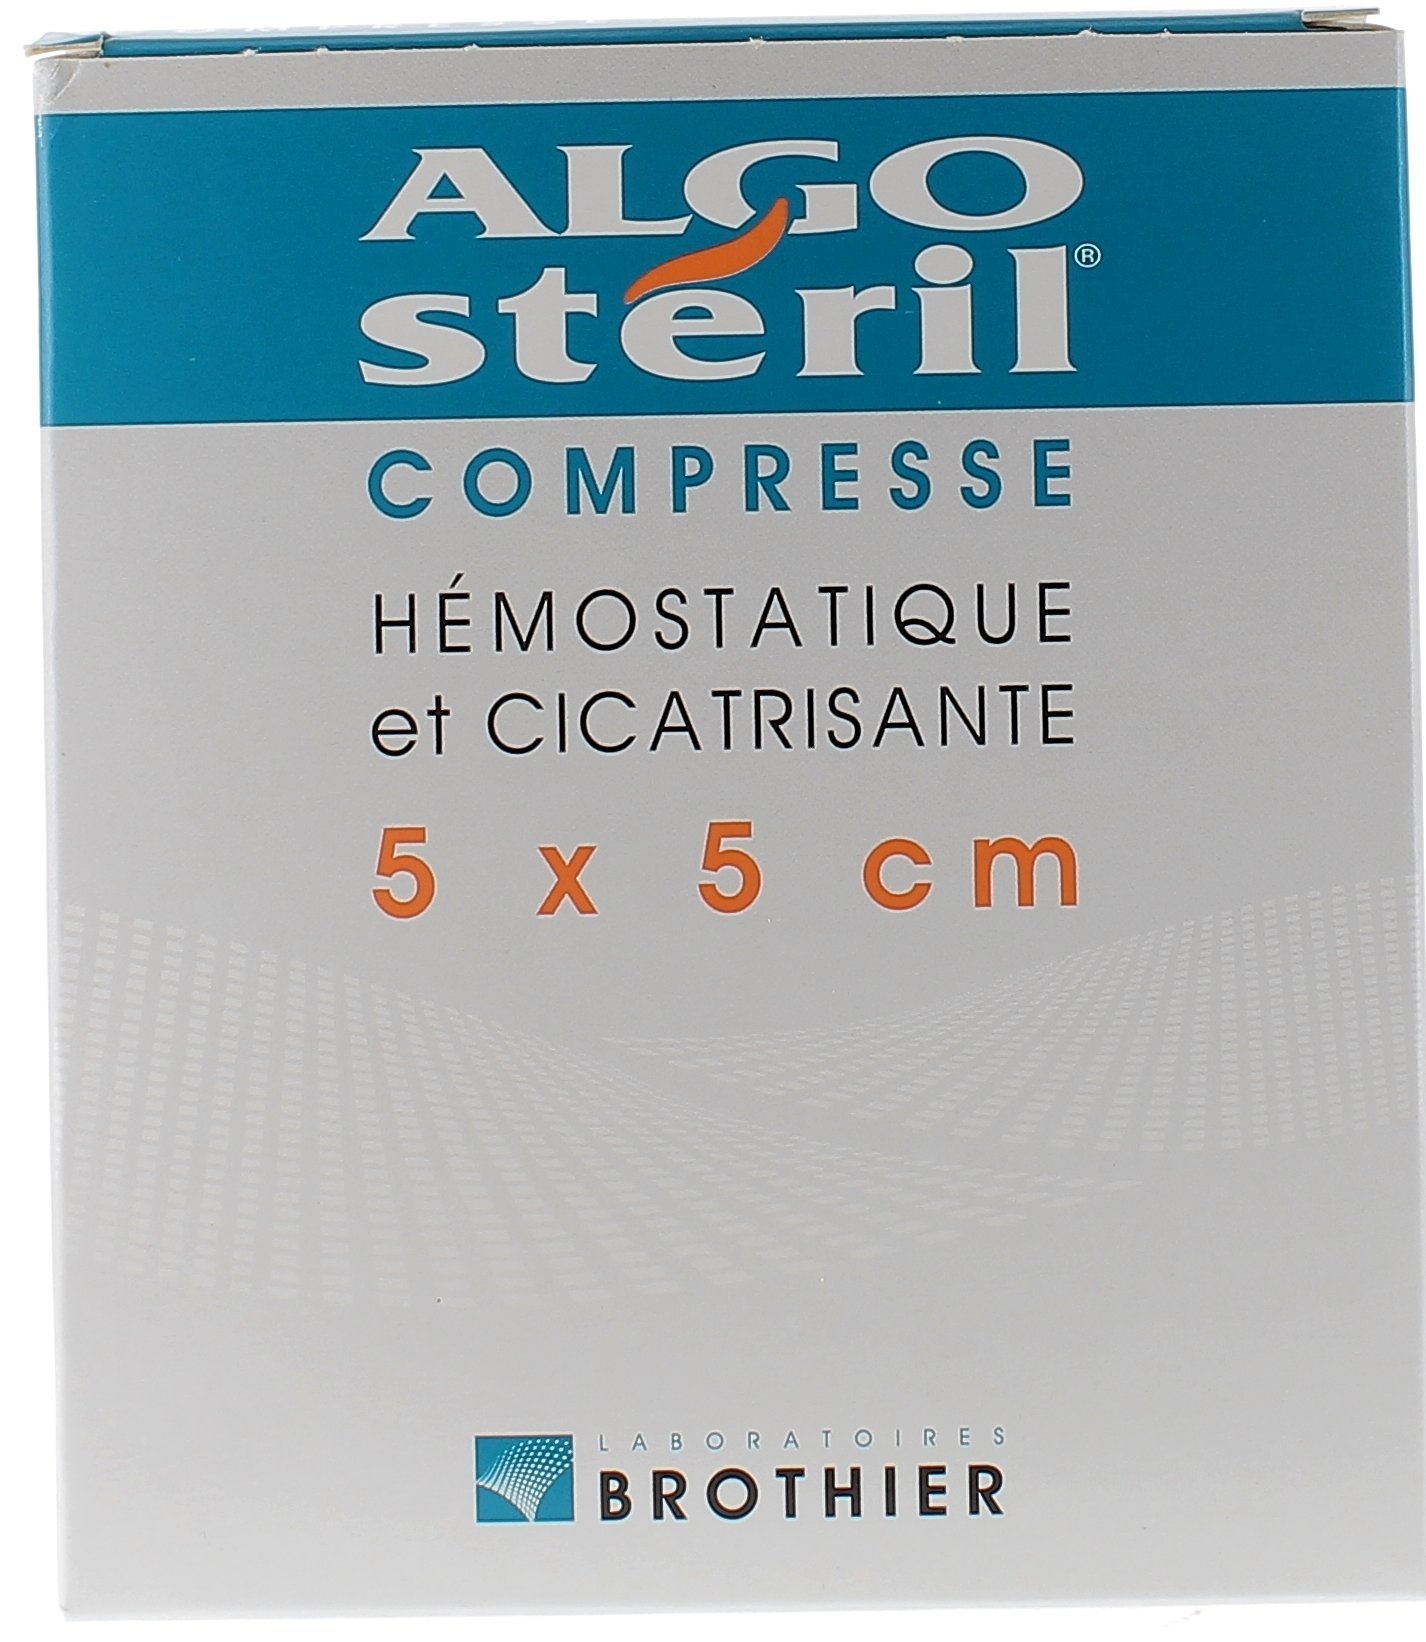 Compresses hémostatiques et cicatrisantes 5x5 cm algostéril Brothier - boite de 10 compresses